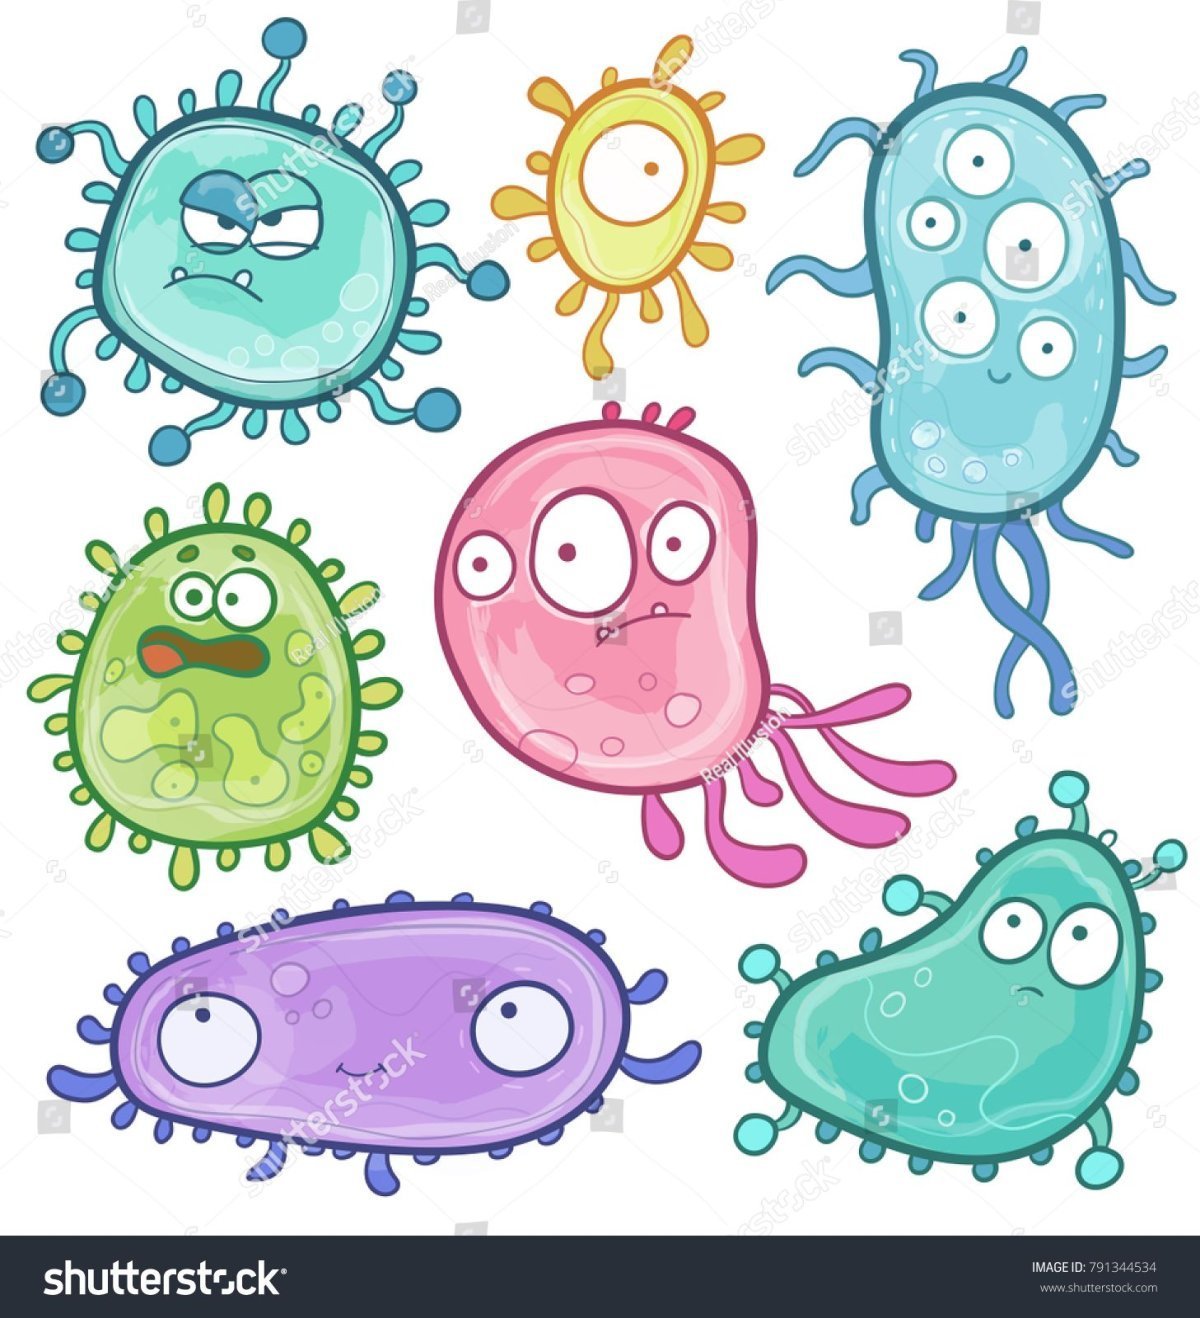 Микробы картинки для детей - 47 фото